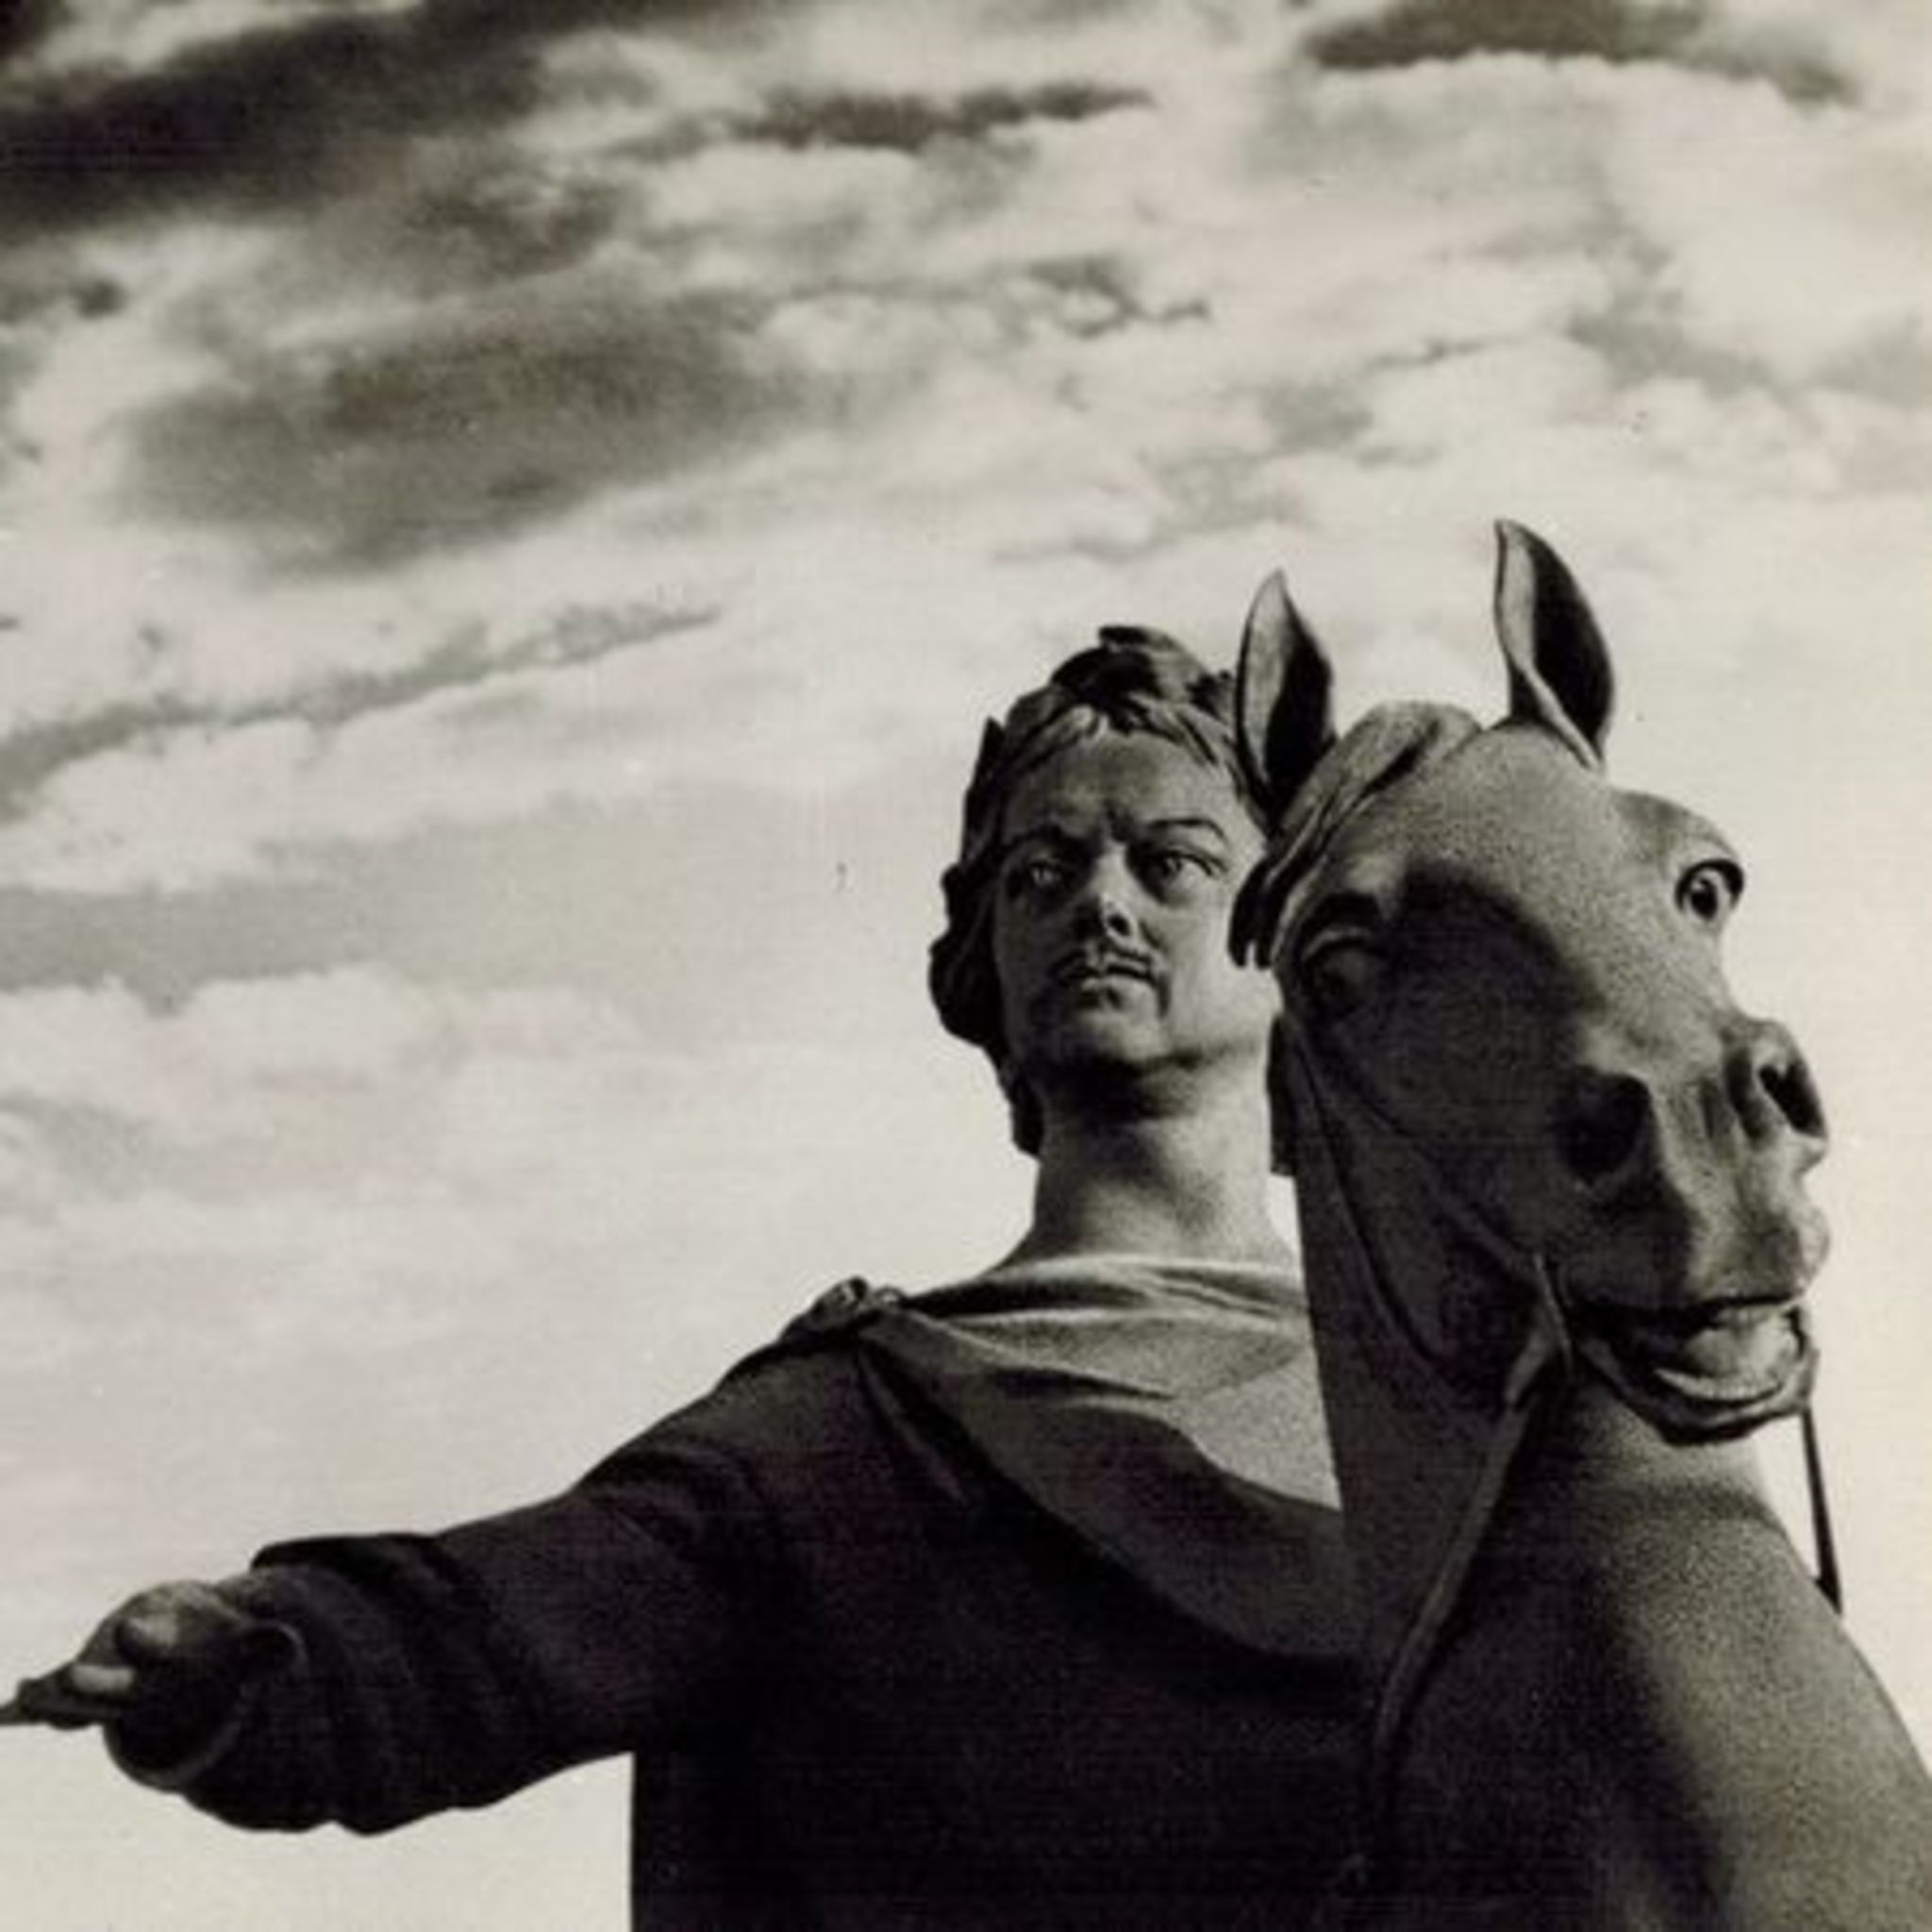 Exhibition Vozniknul brazen idol head on a bronze horse …